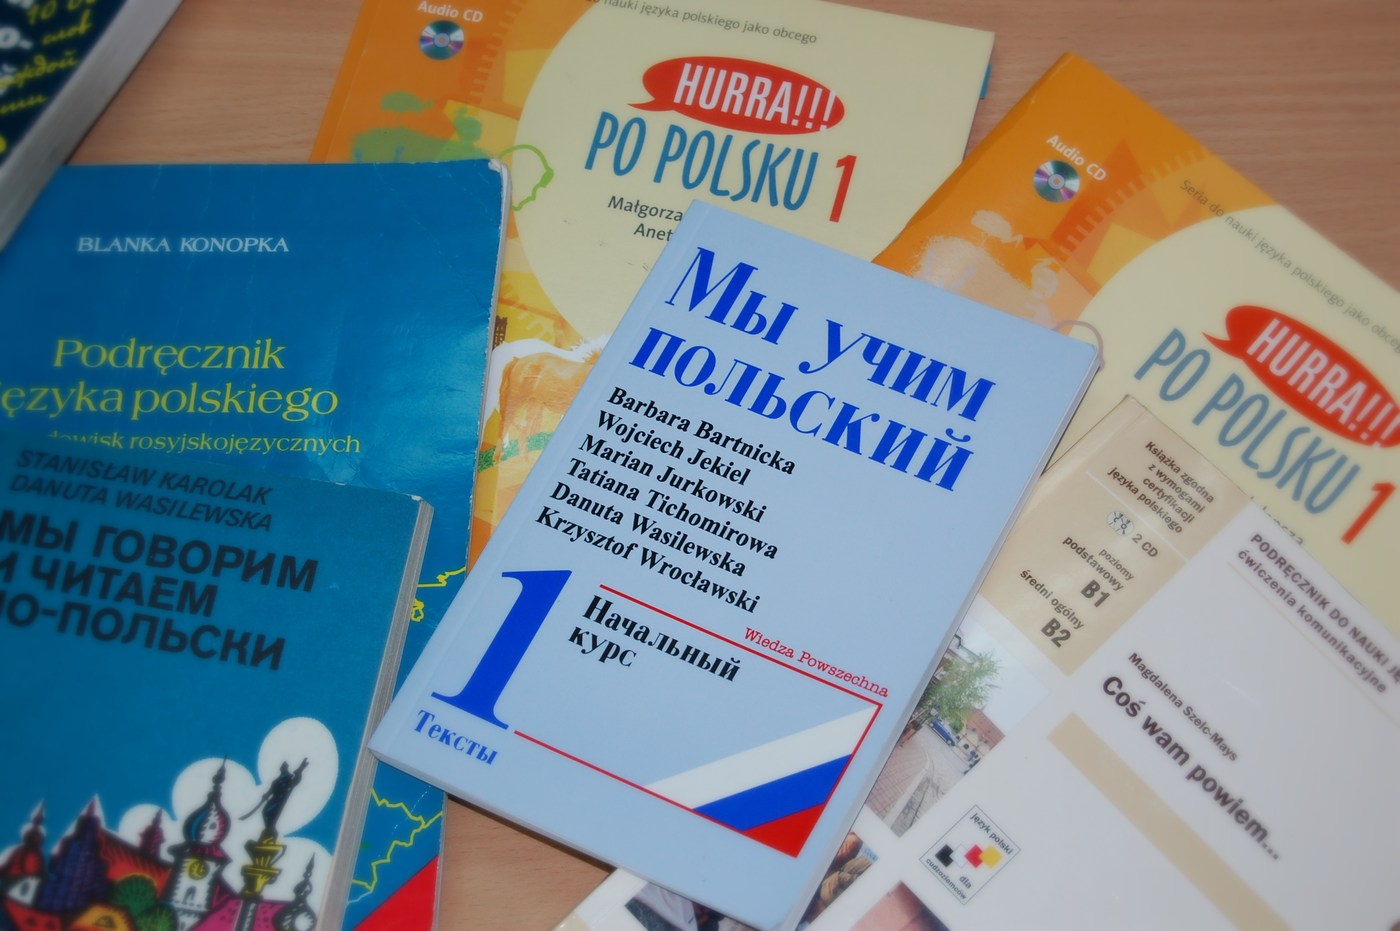 Бланка конопка учебник польского языка скачать бесплатно